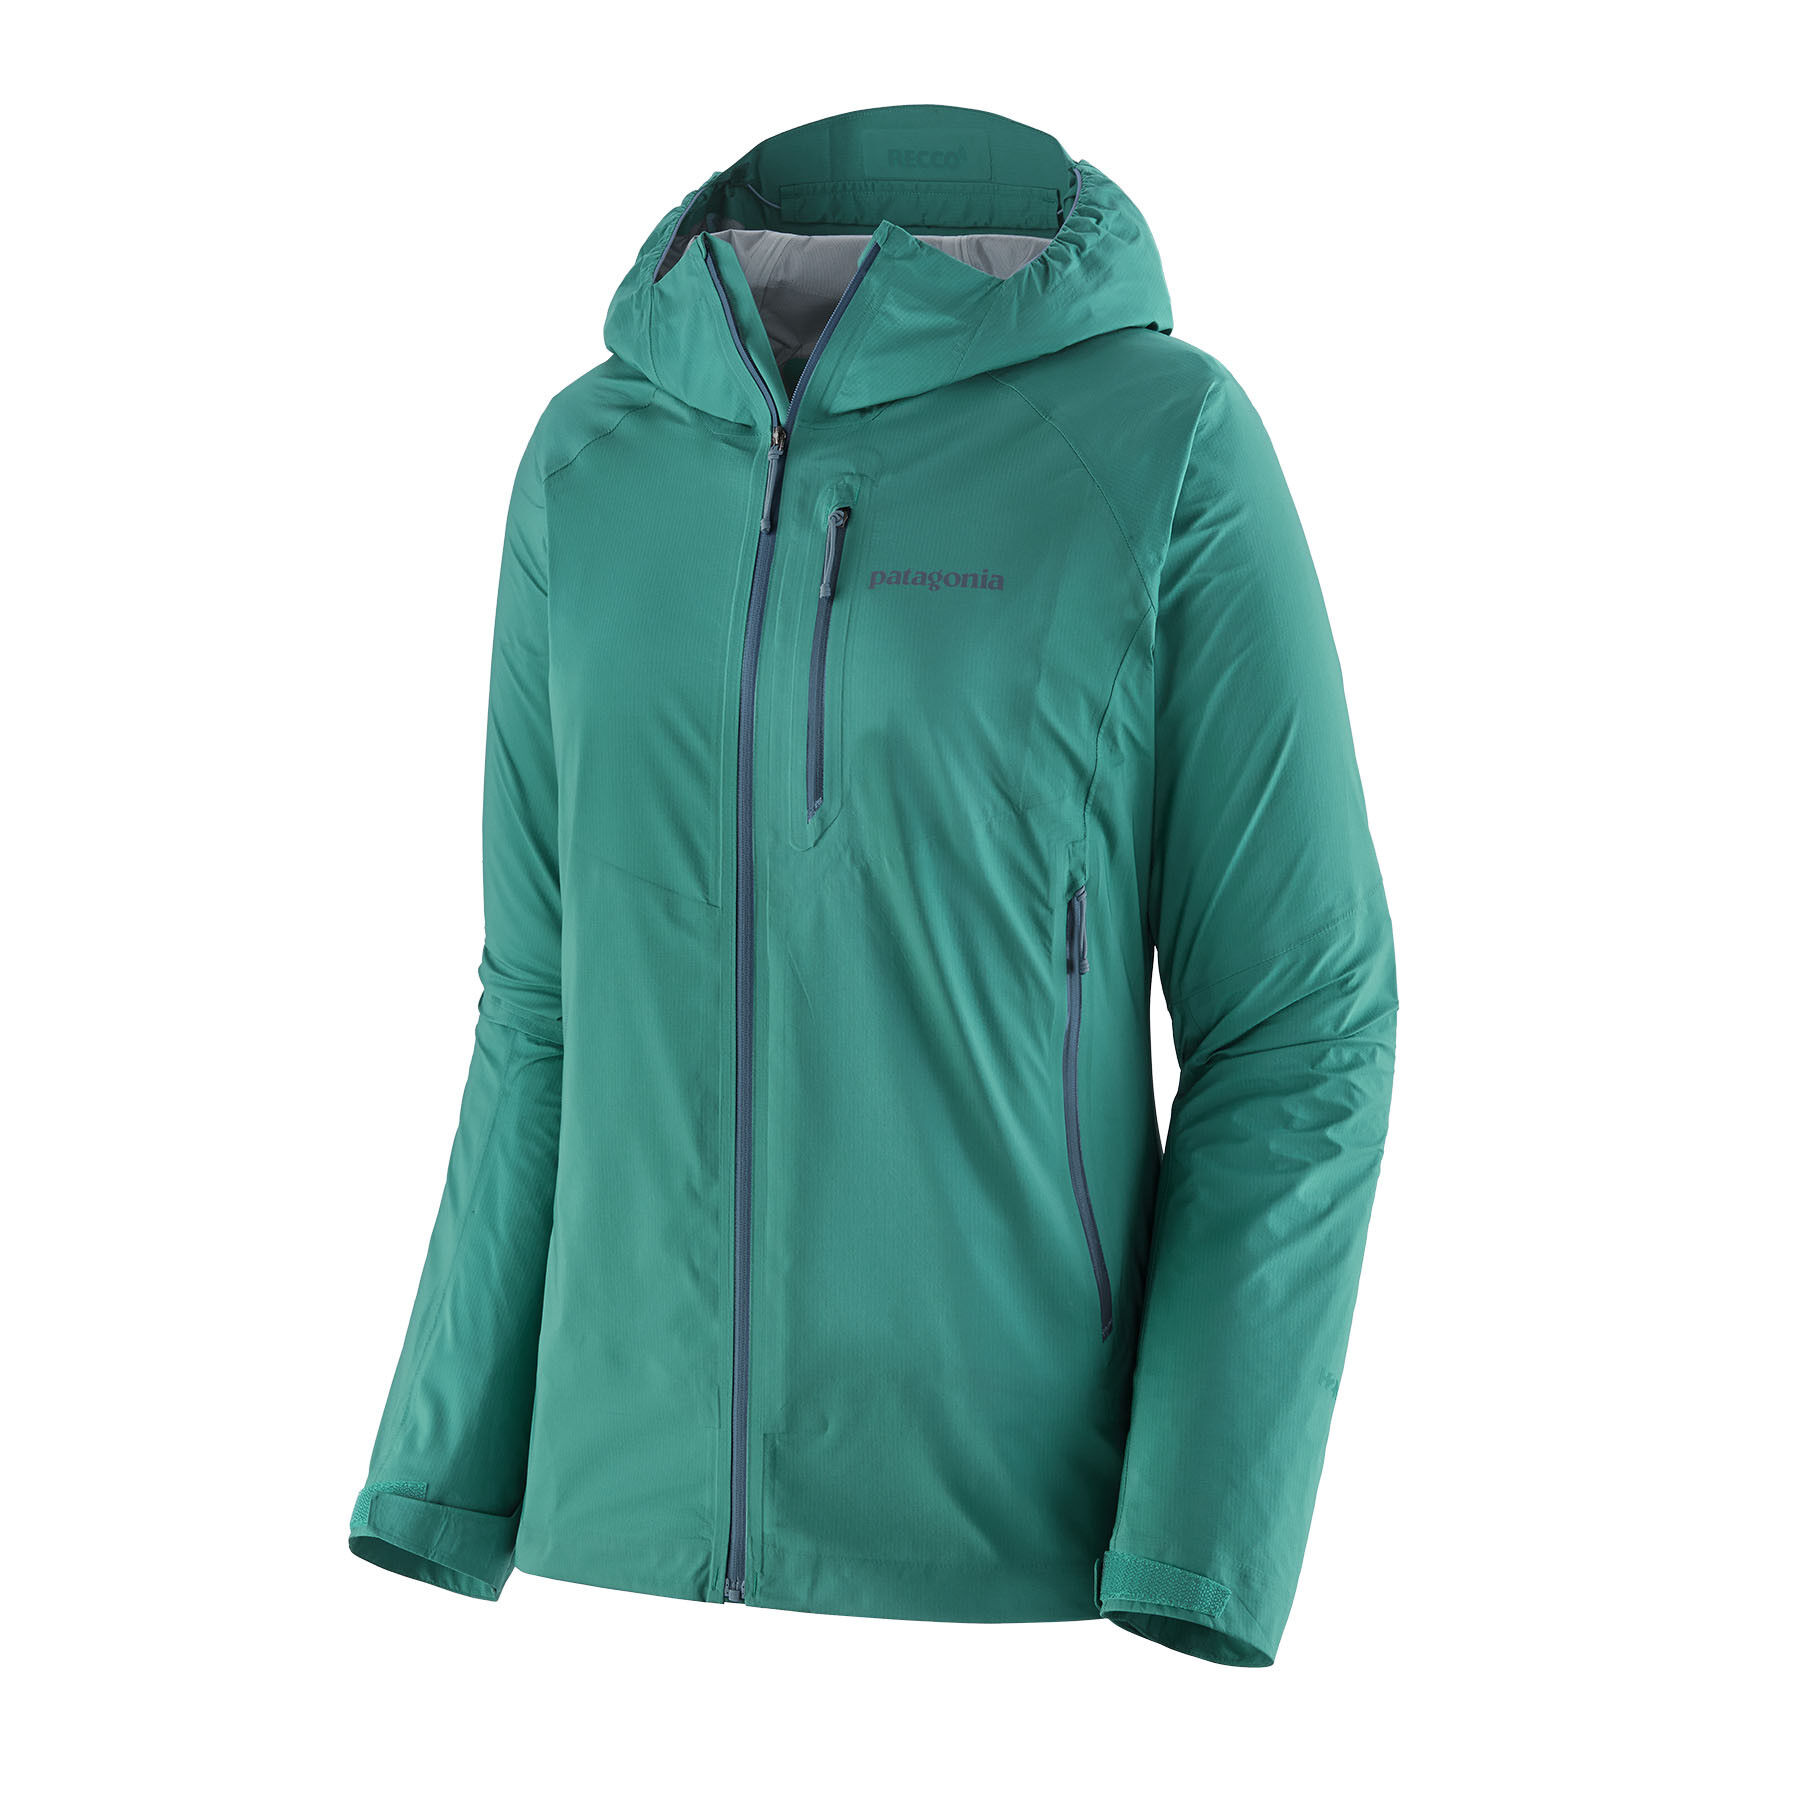 Patagonia Storm10 Jacket - Waterproof jacket - Women's